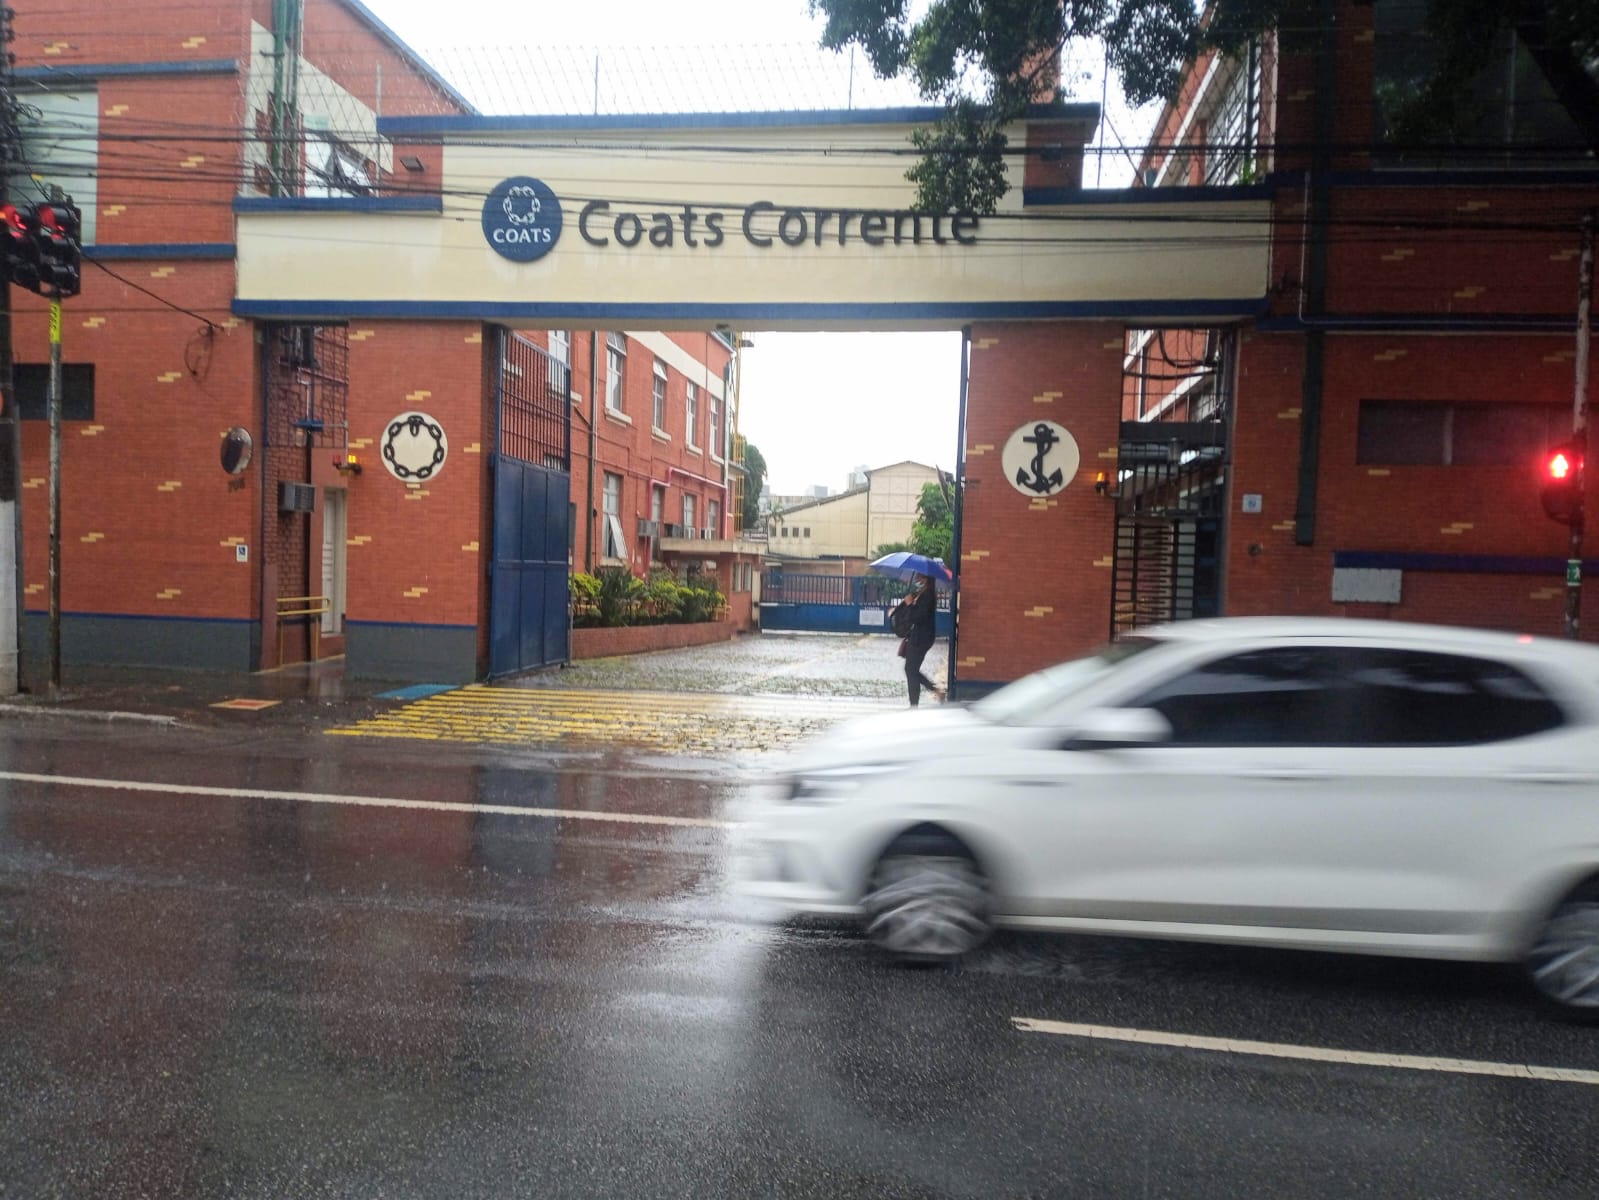 A fábrica Coats Corrente, na rua do Manifesto, é uma das mais antigas da região do Ipiranga. Ajudou a fixar gente quando a região era um subúrbio ermo